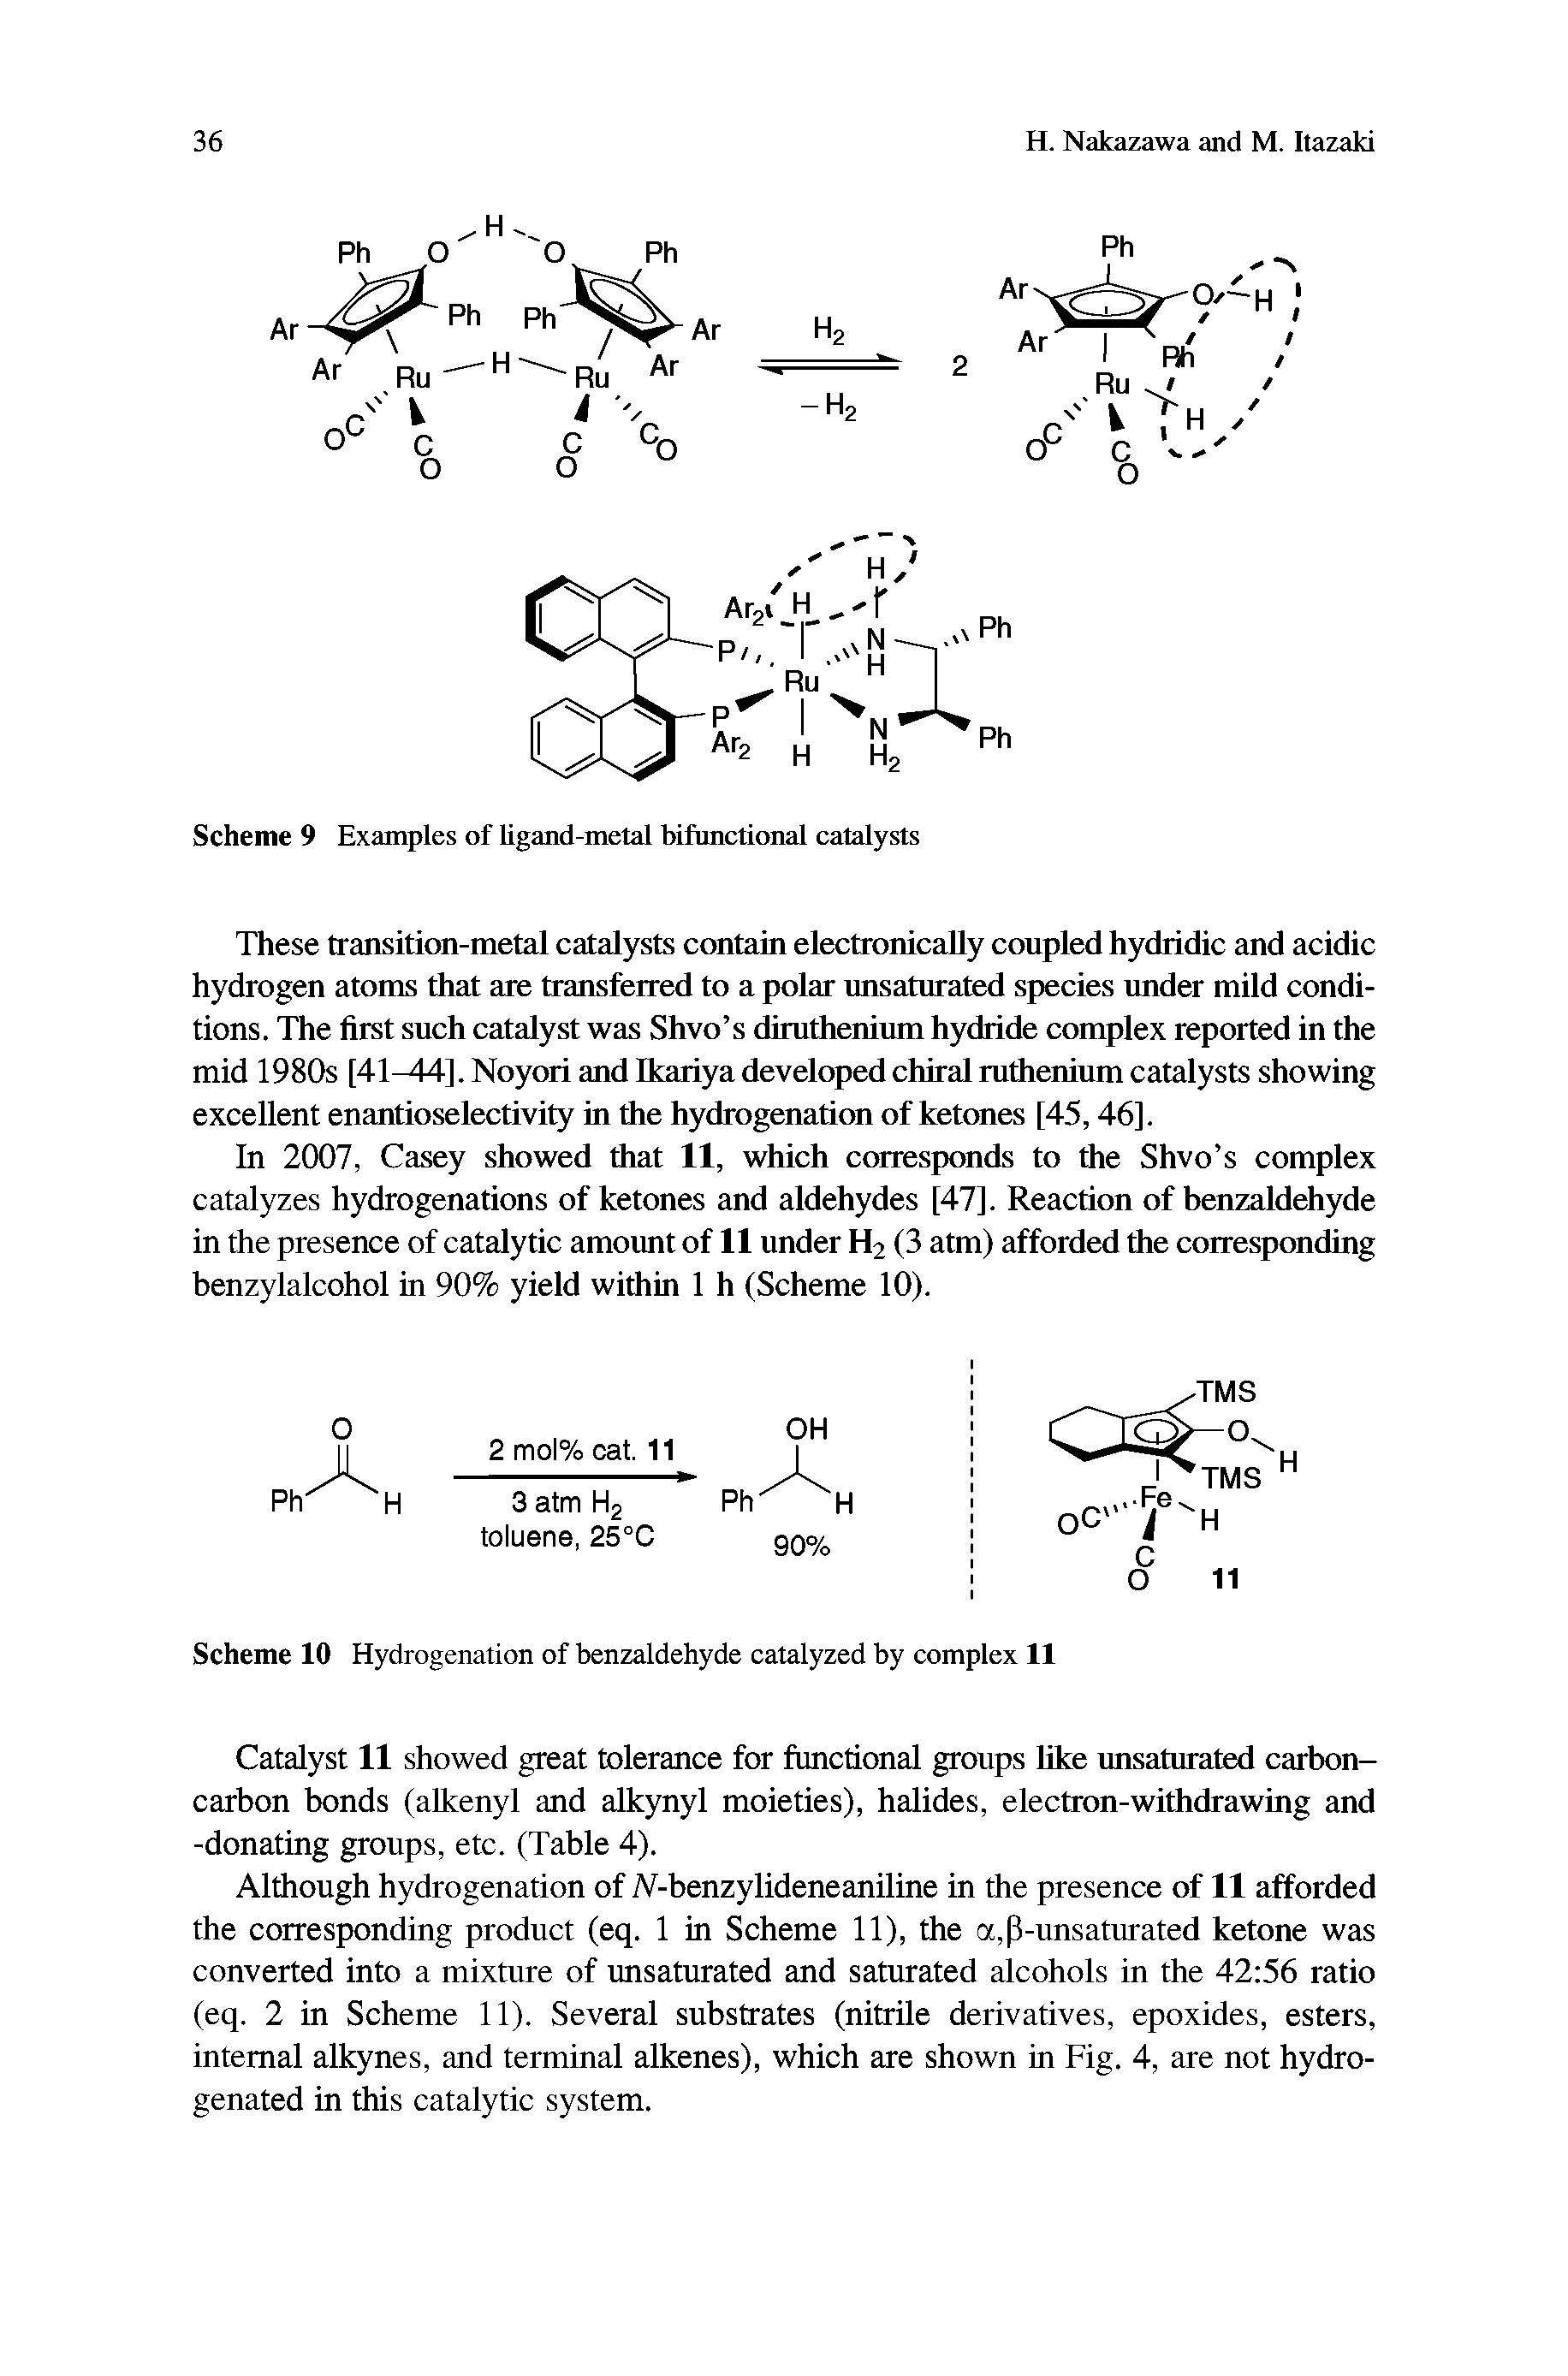 Scheme 9 Examples of ligand-metal bifunctional catalysts...